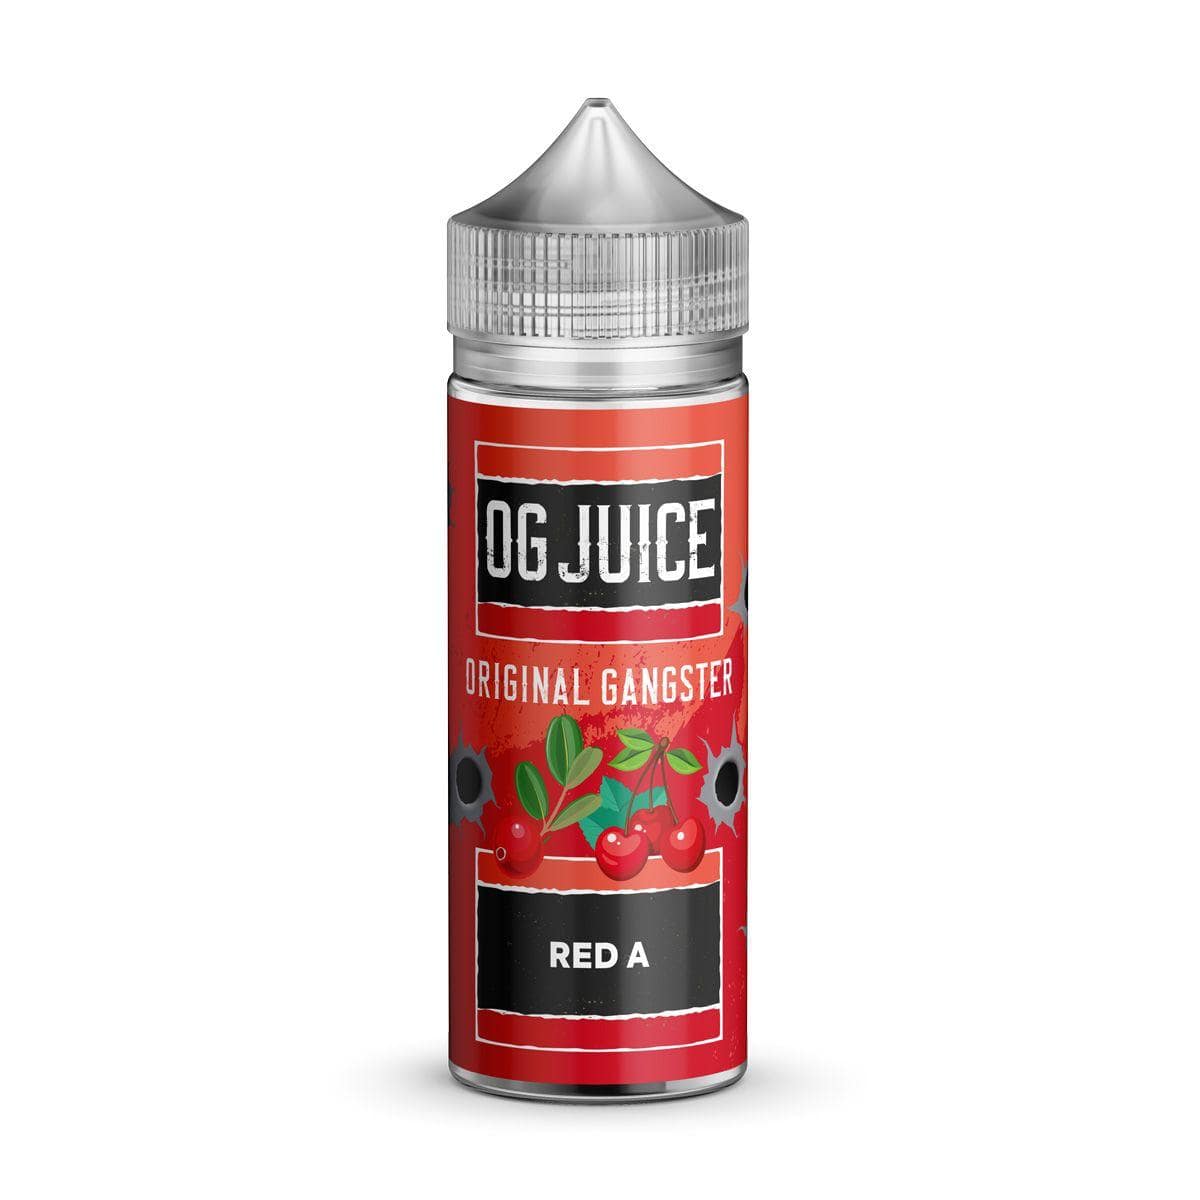 OG Juice Original Gangster - Red A - 100ml E-liquid Shortfill - Mcr Vape Distro